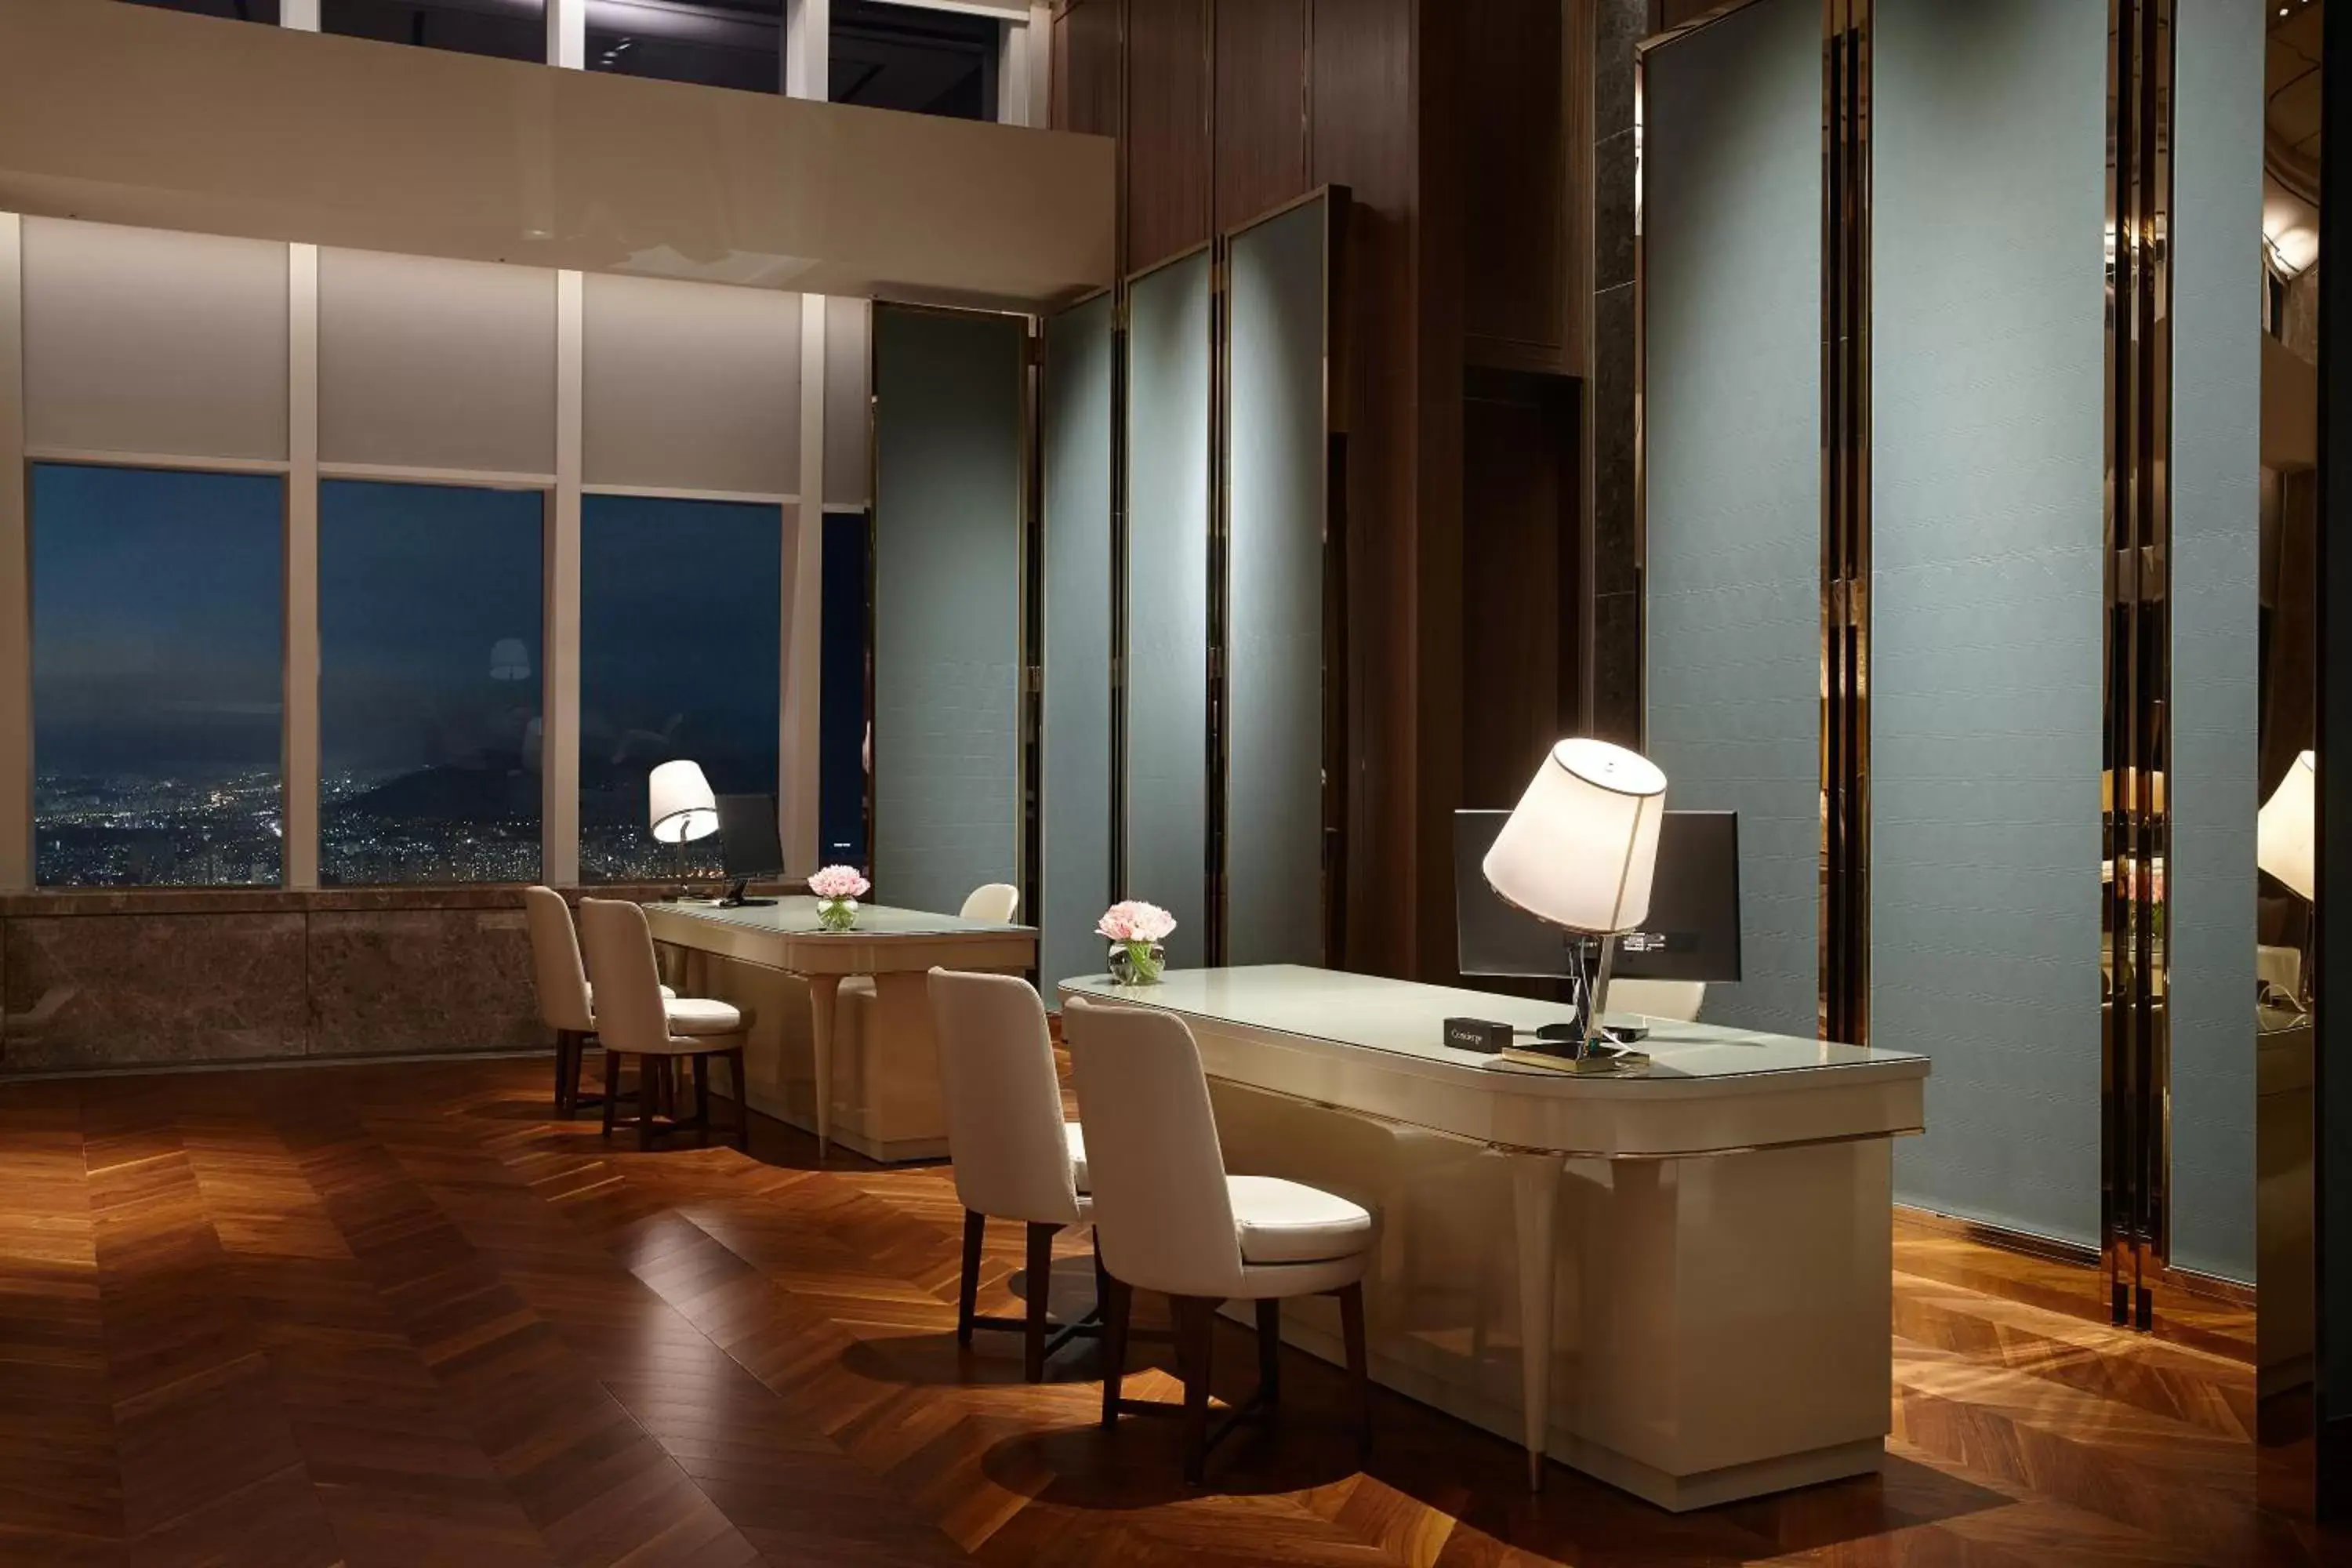 Lobby or reception, Bathroom in Signiel Seoul